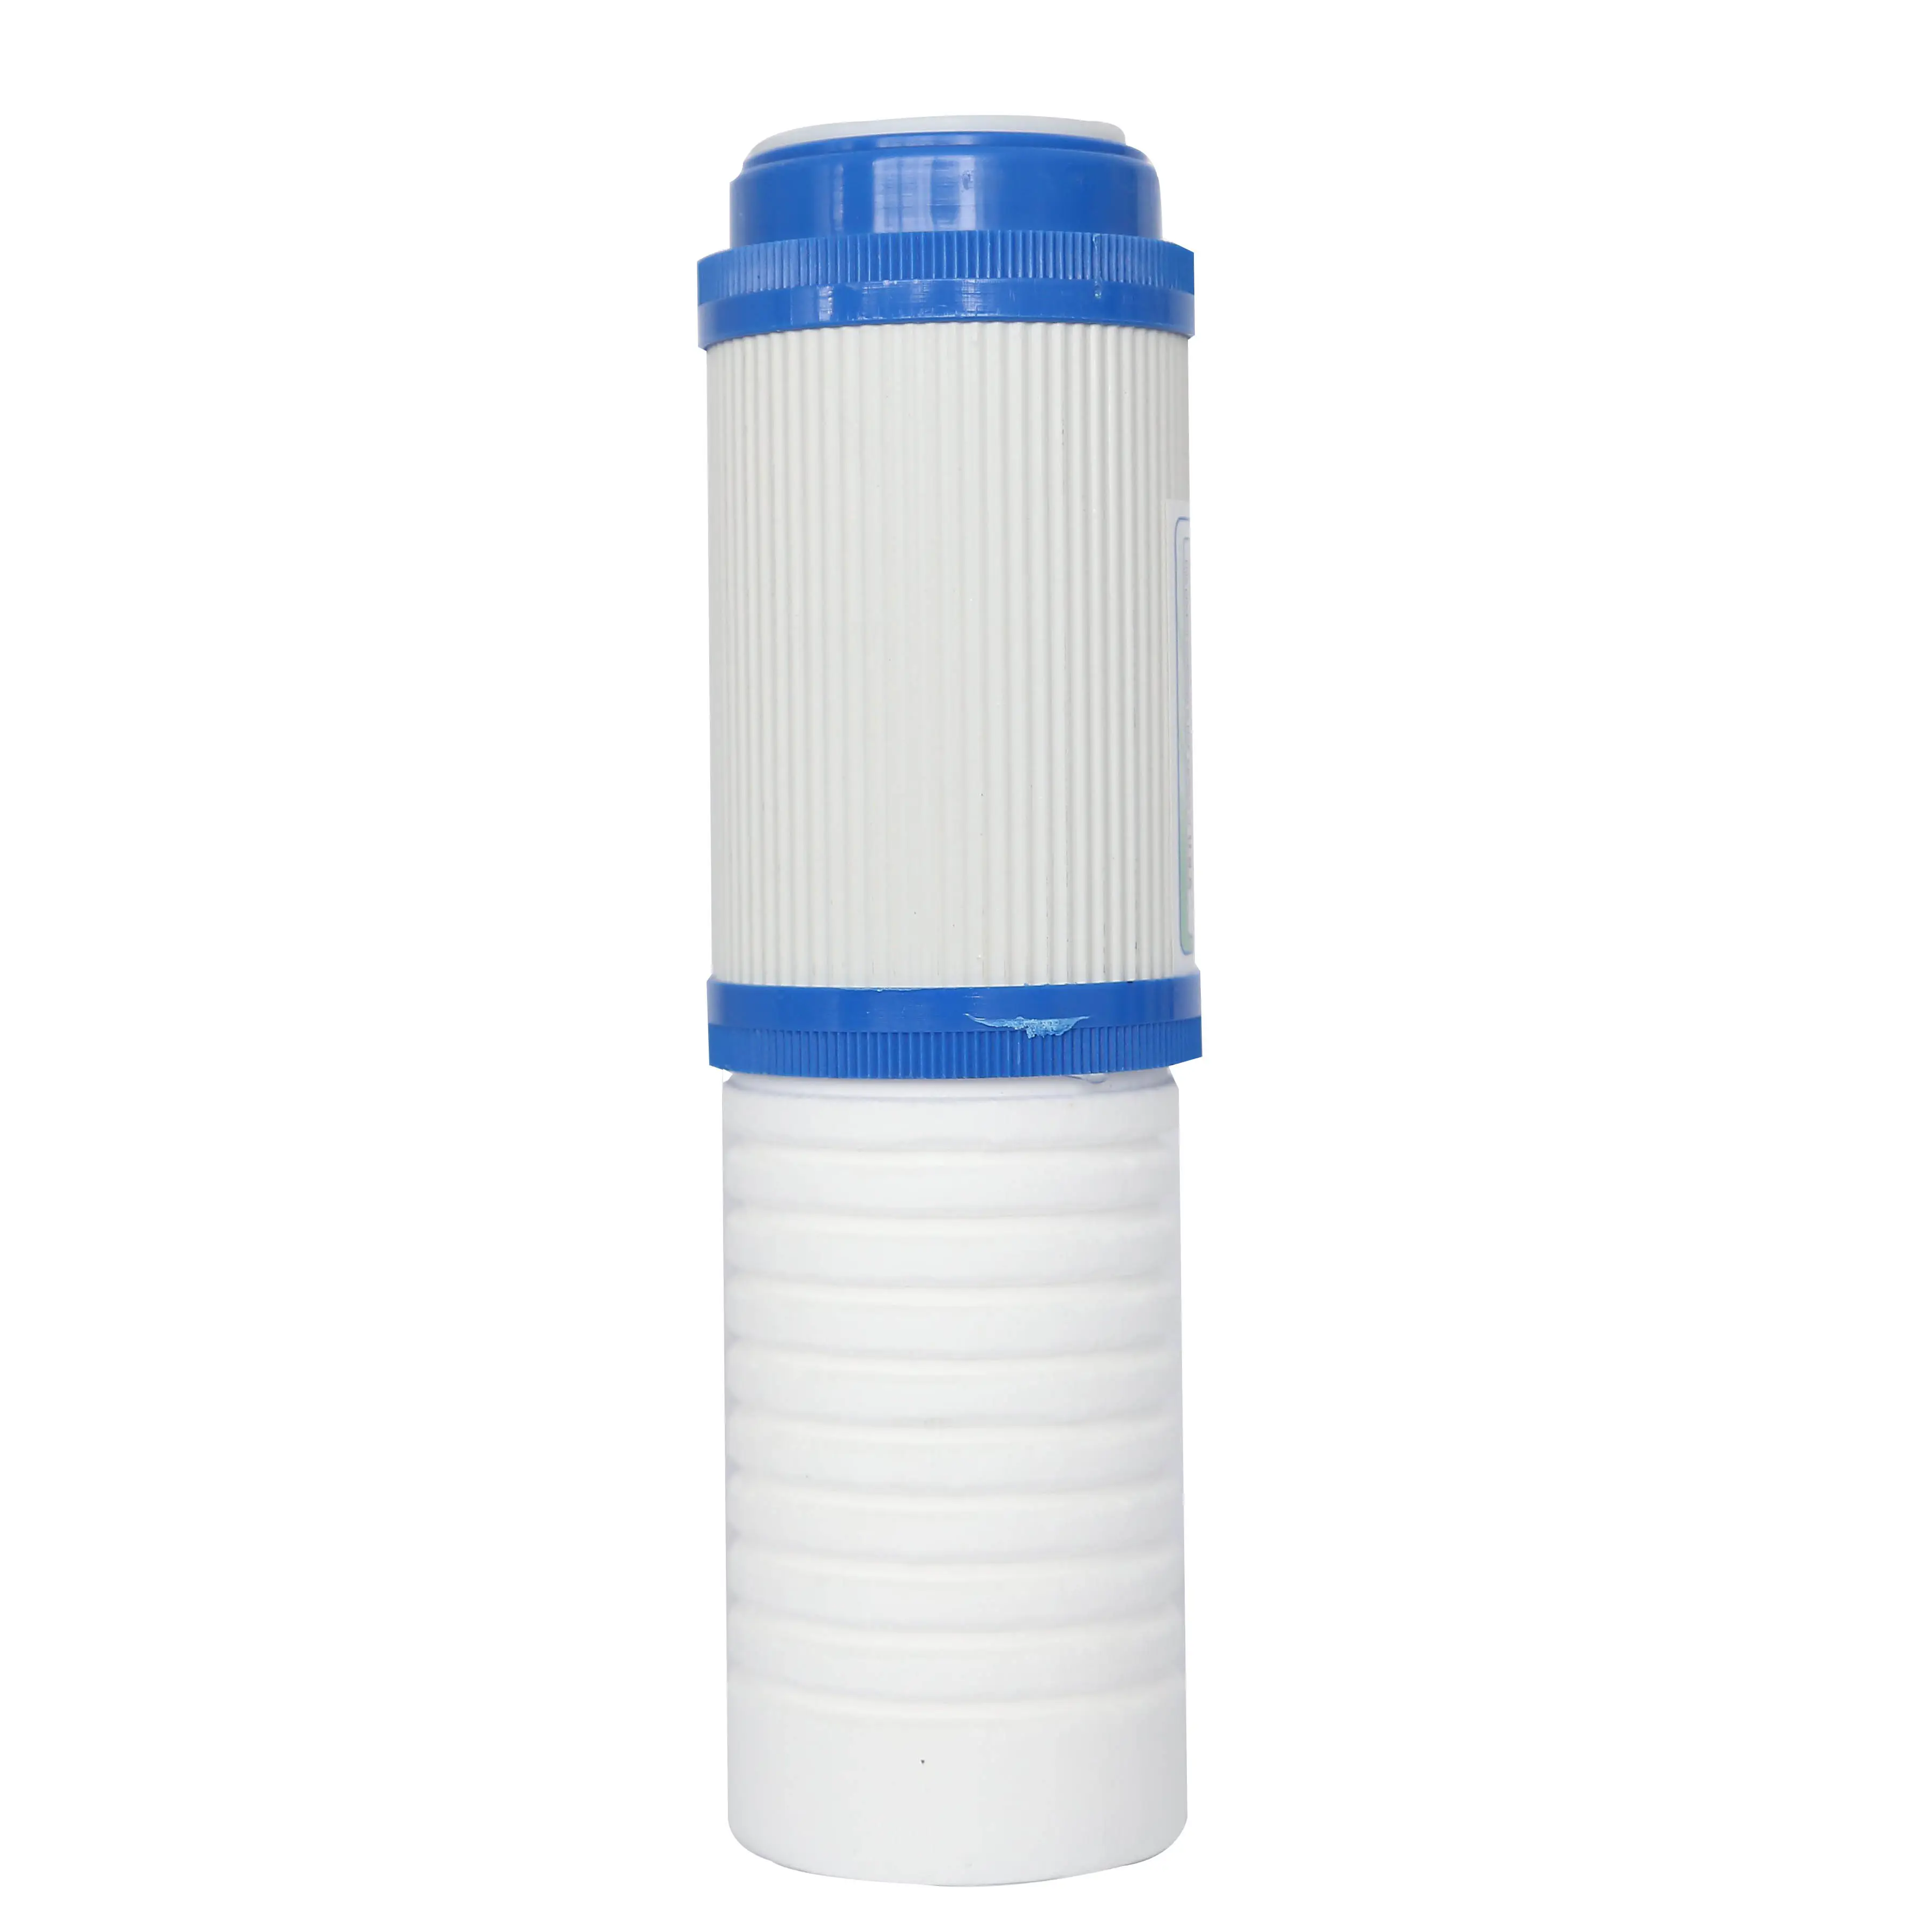 La cartuccia del filtro del depuratore d'acqua può essere utilizzata cartuccia del filtro composta della cartuccia del filtro a carbone attivo del guscio di cocco